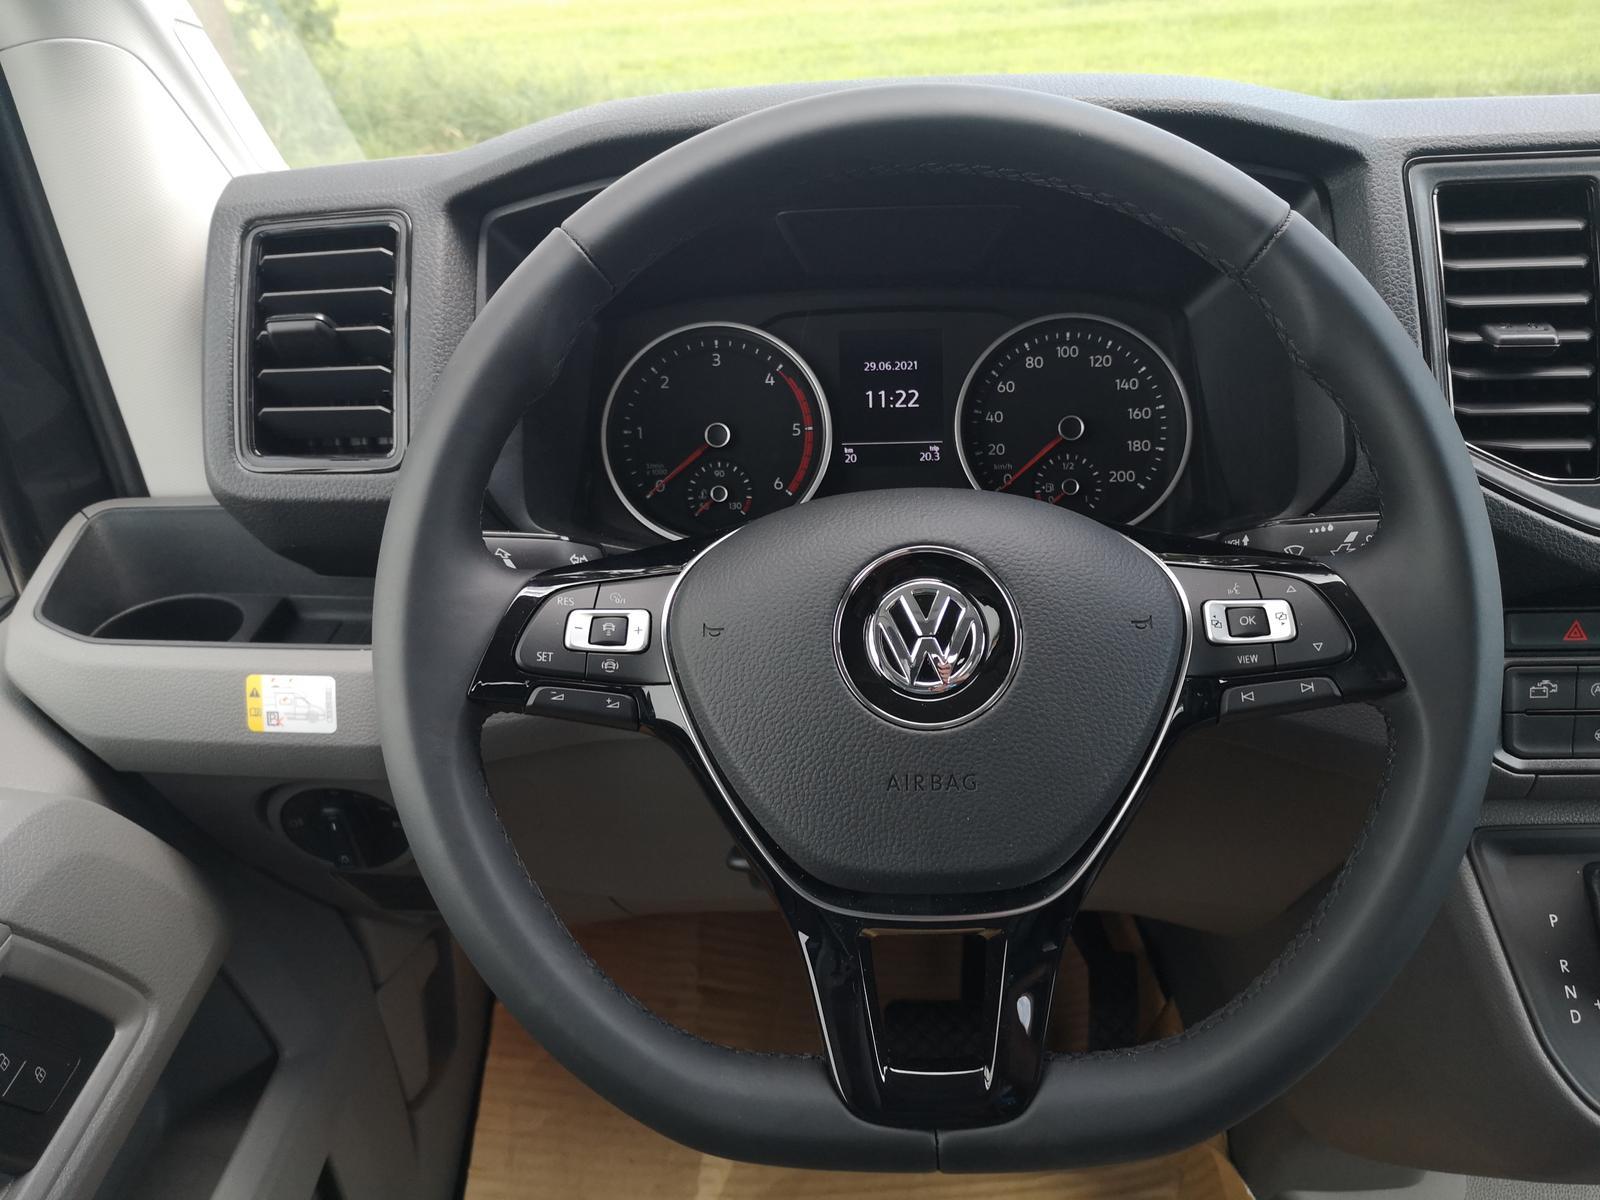 Volkswagen Grand California 2.0 TDI 600 3,5T UPE 94.010 ?, EU-Neuwagen &  Reimporte, Autohaus Kleinfeld, EU Fahrzeuge